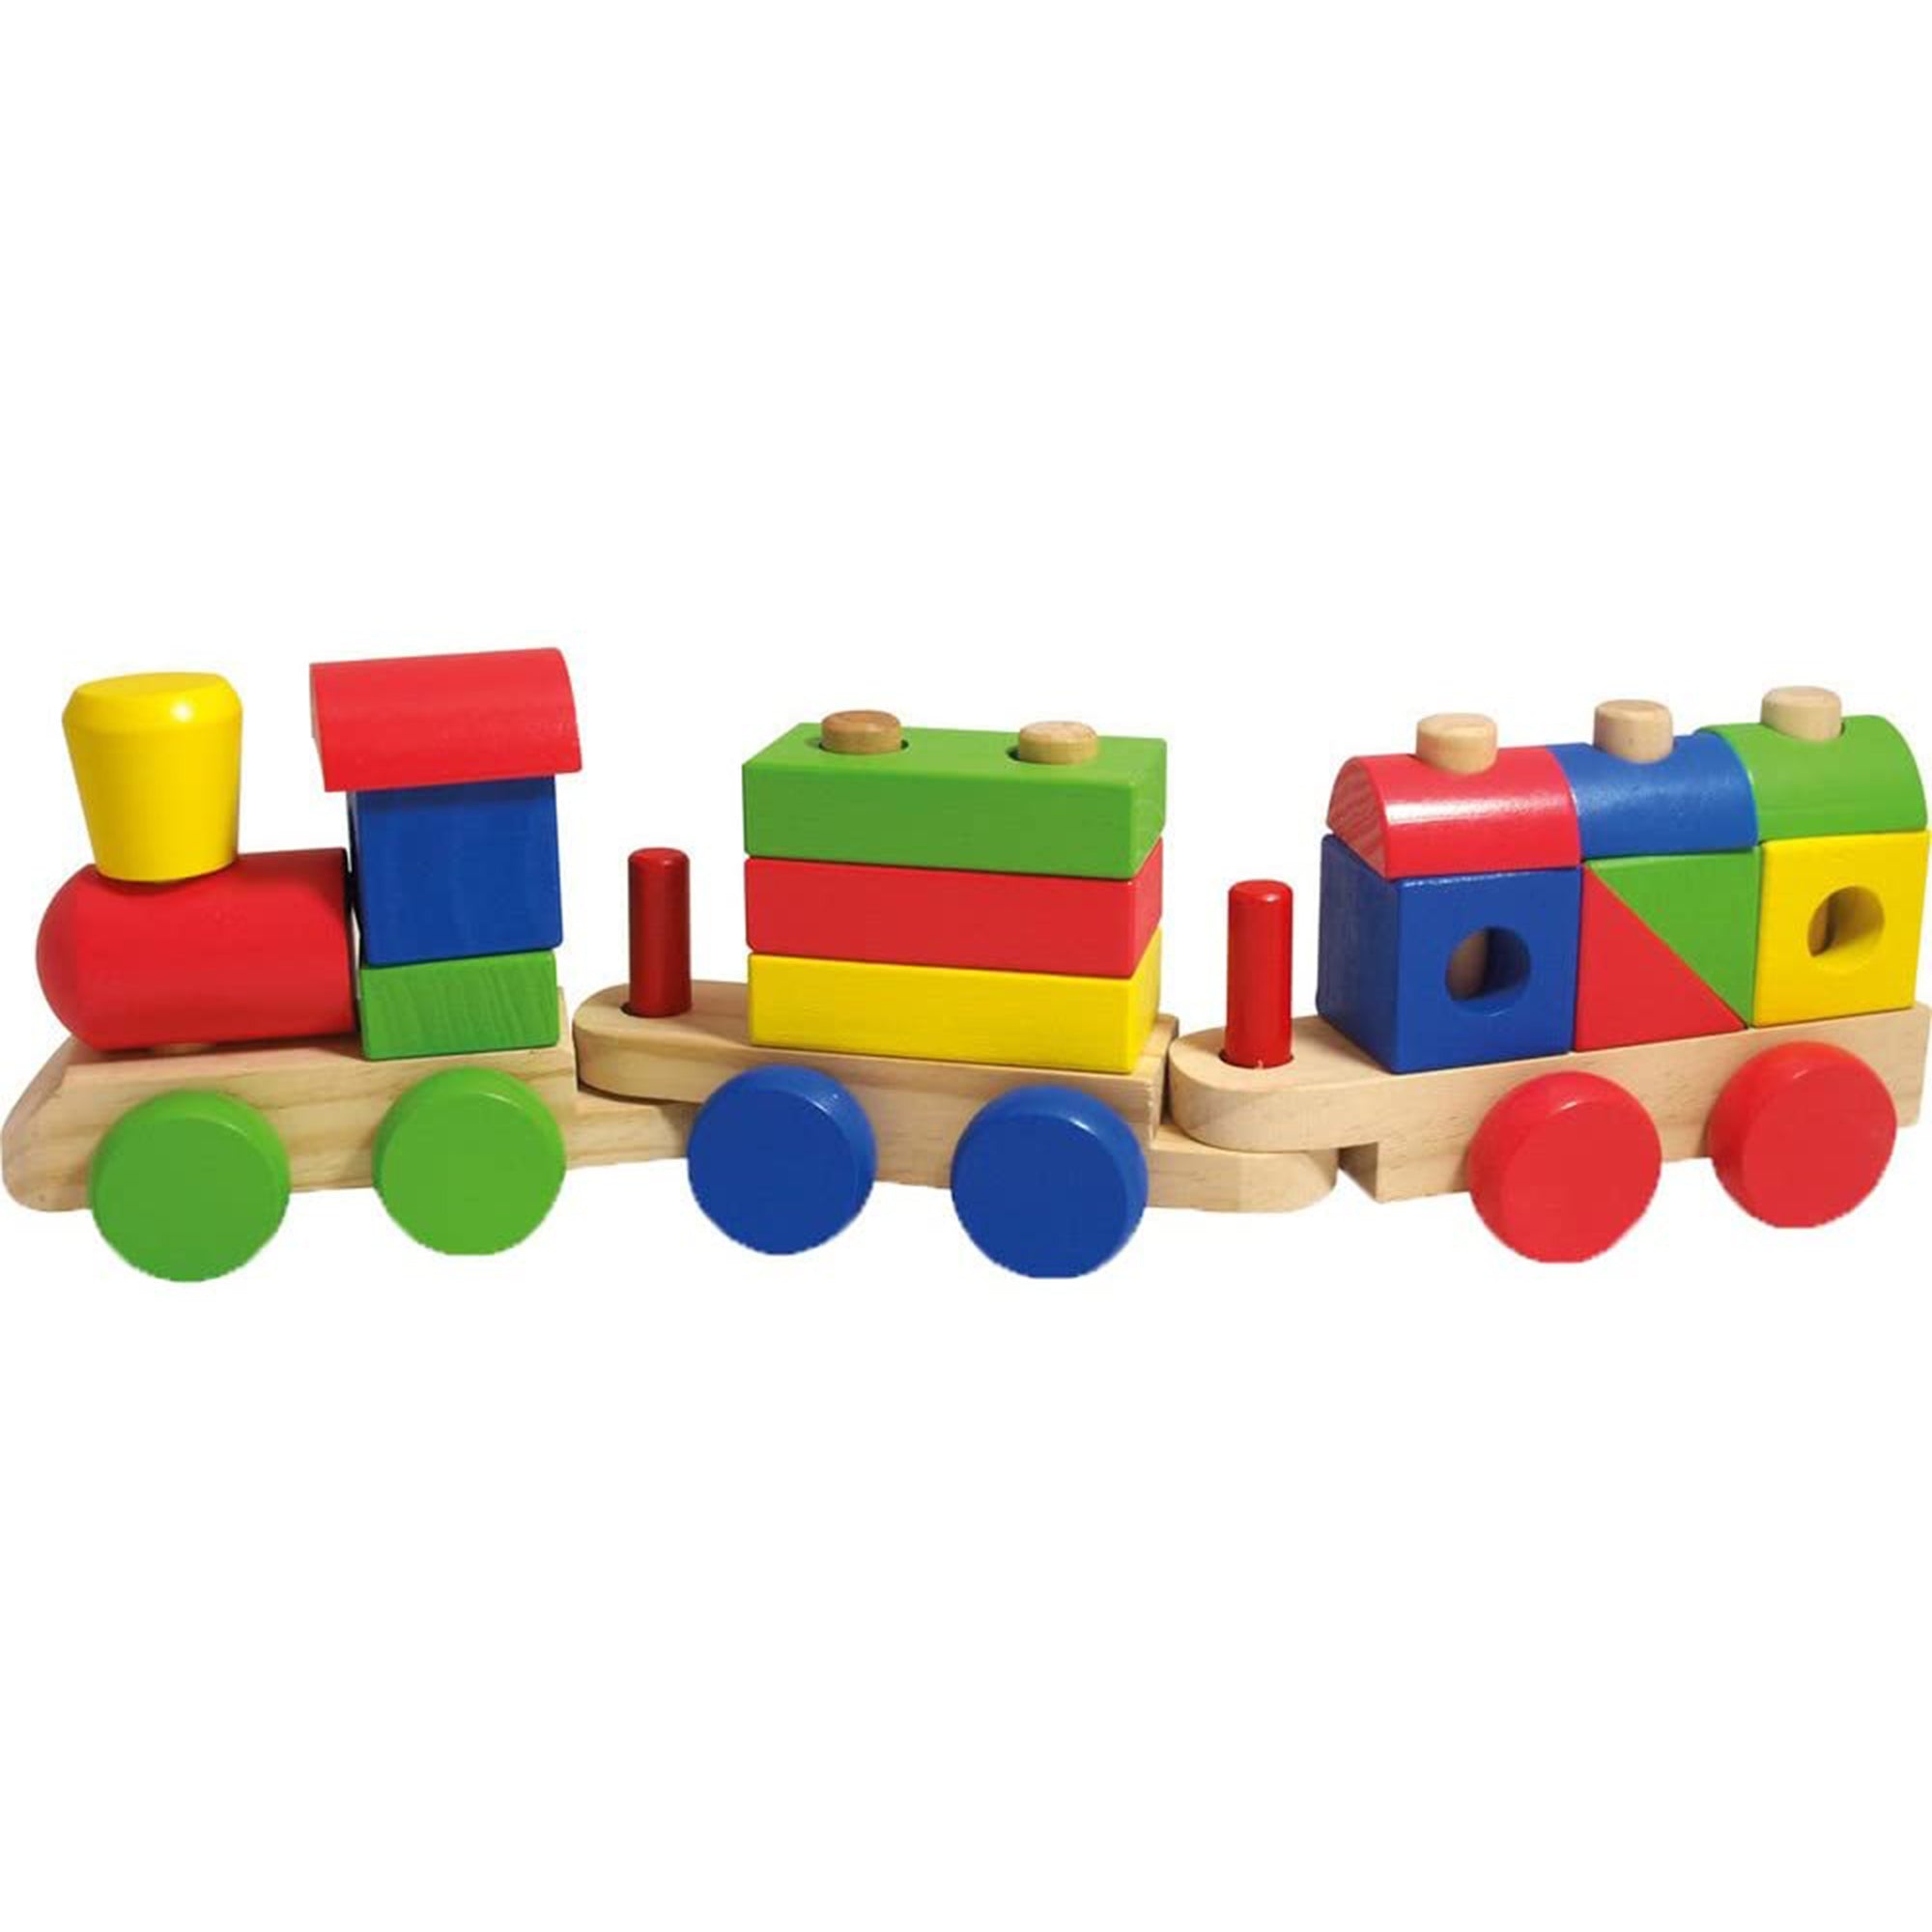 Giocattolo per bambini trenino in legno colorato con vagoni e mattoncini 2755